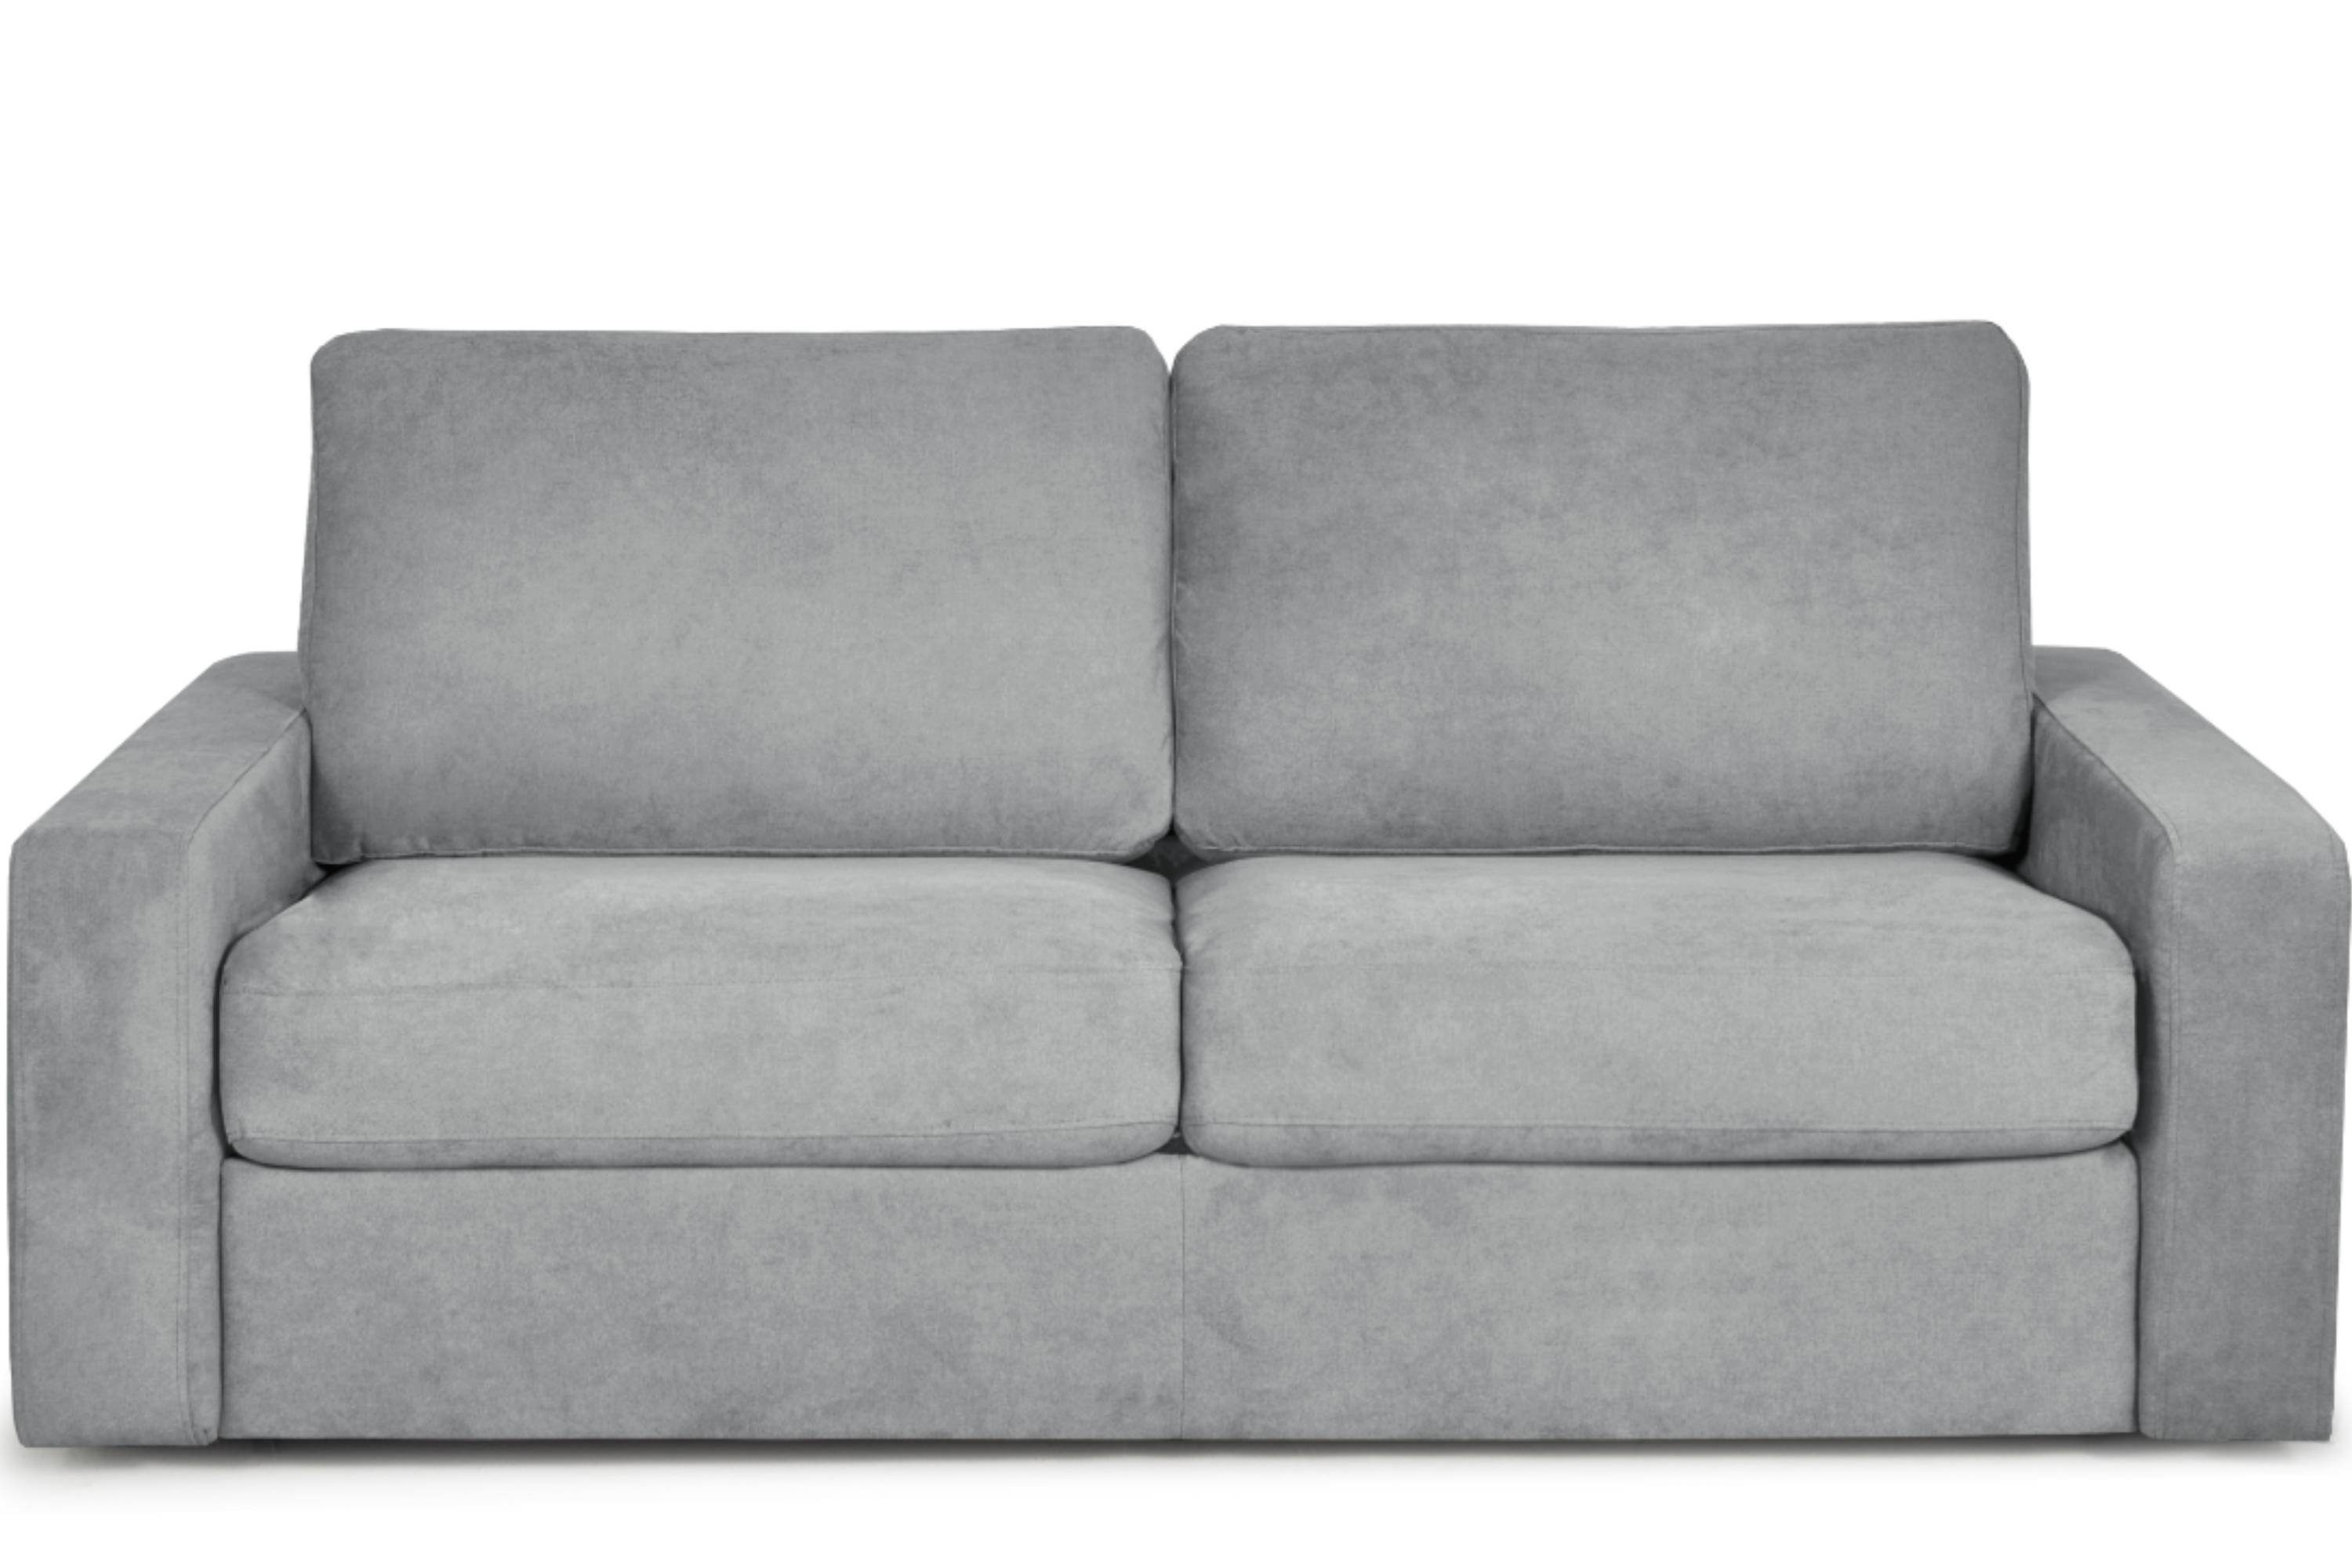 Konsimo Schlafsofa MENTO Sofa 3 Personen, zeitloses Design, Dauerschlaf-Funktion mit Unterfederung und Matratze hellgrau | hellgrau | hellgrau